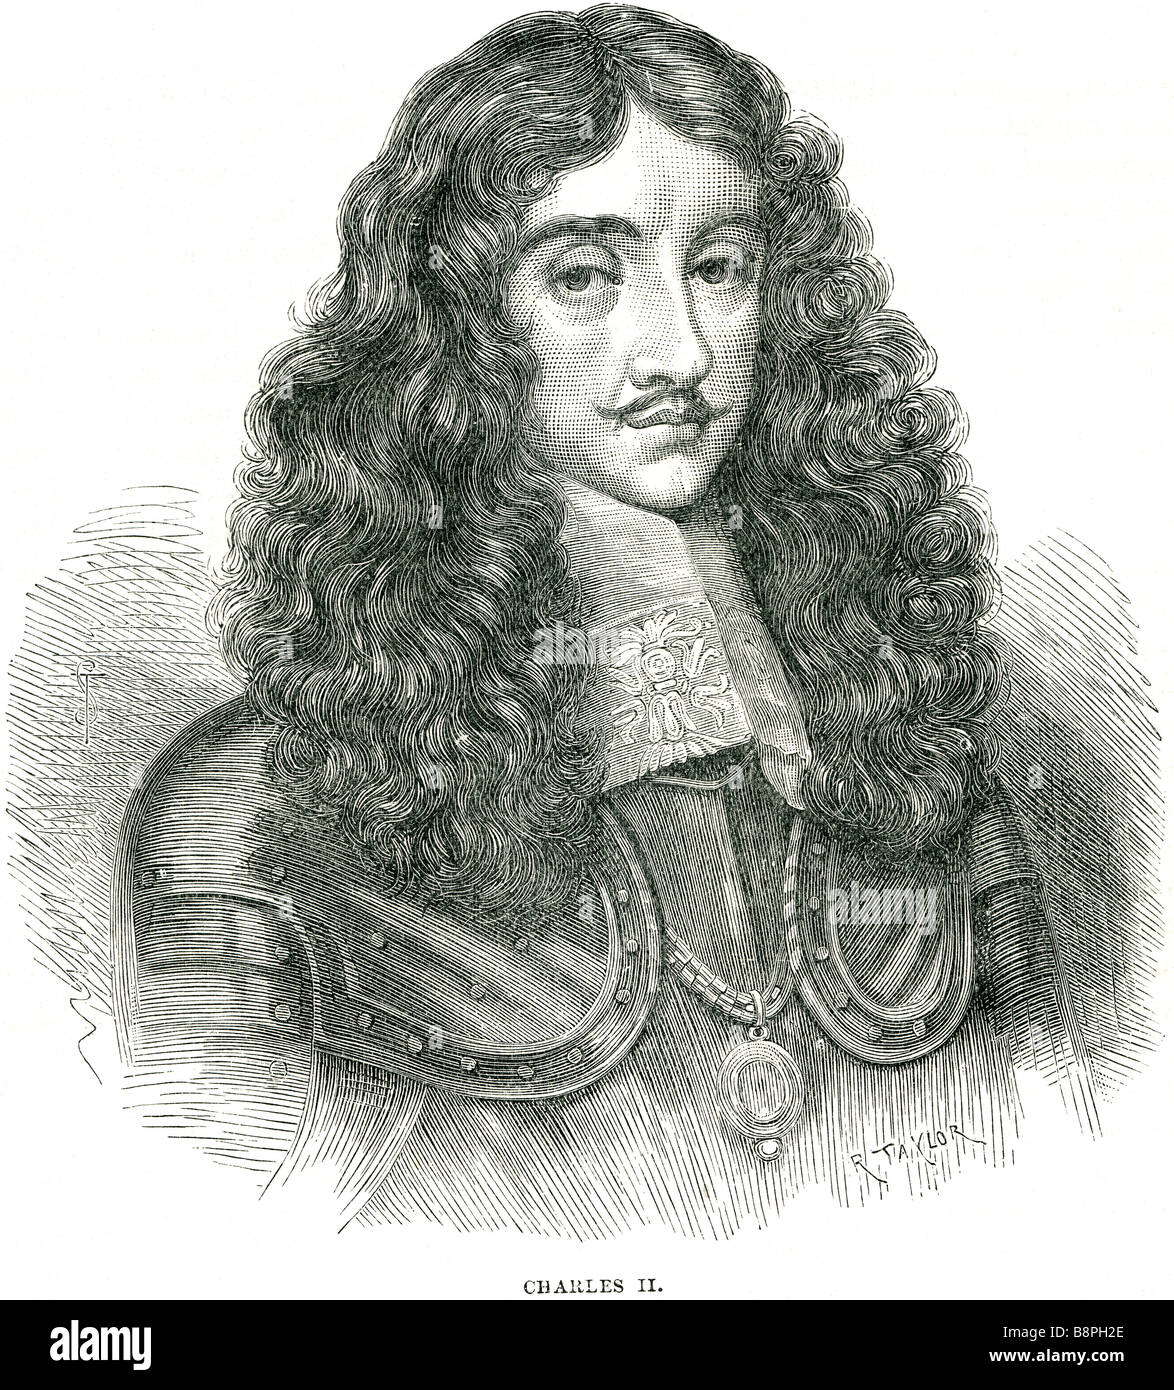 Le père de Charles II Roi Charles I a été exécutée à Whitehall le 30 janvier 1649, à l'apogée de la guerre civile anglaise. La FRA Banque D'Images